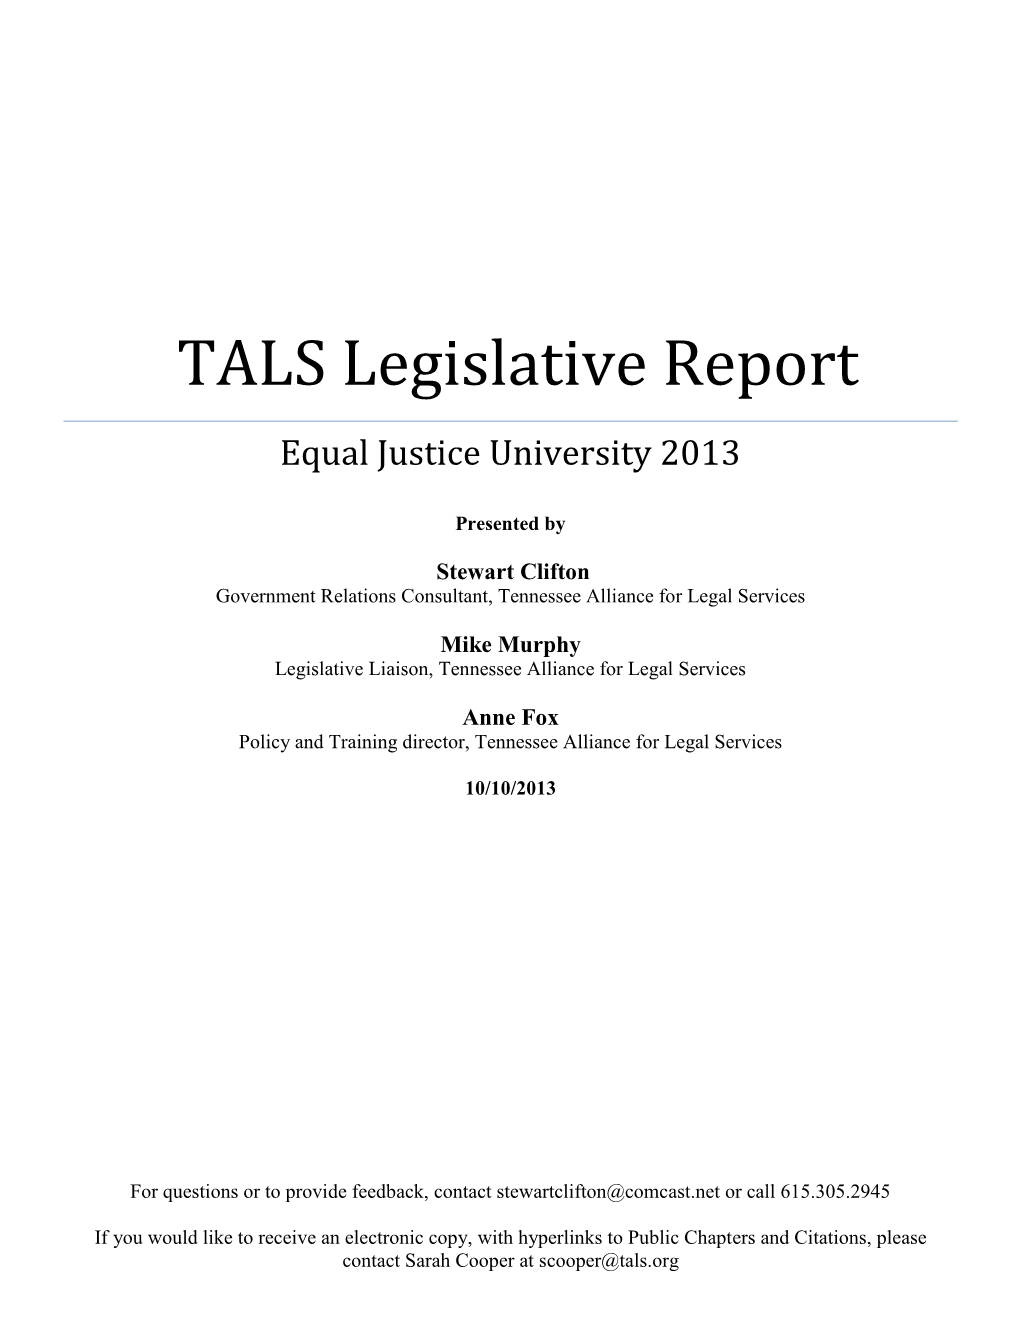 2013 Legislative Update